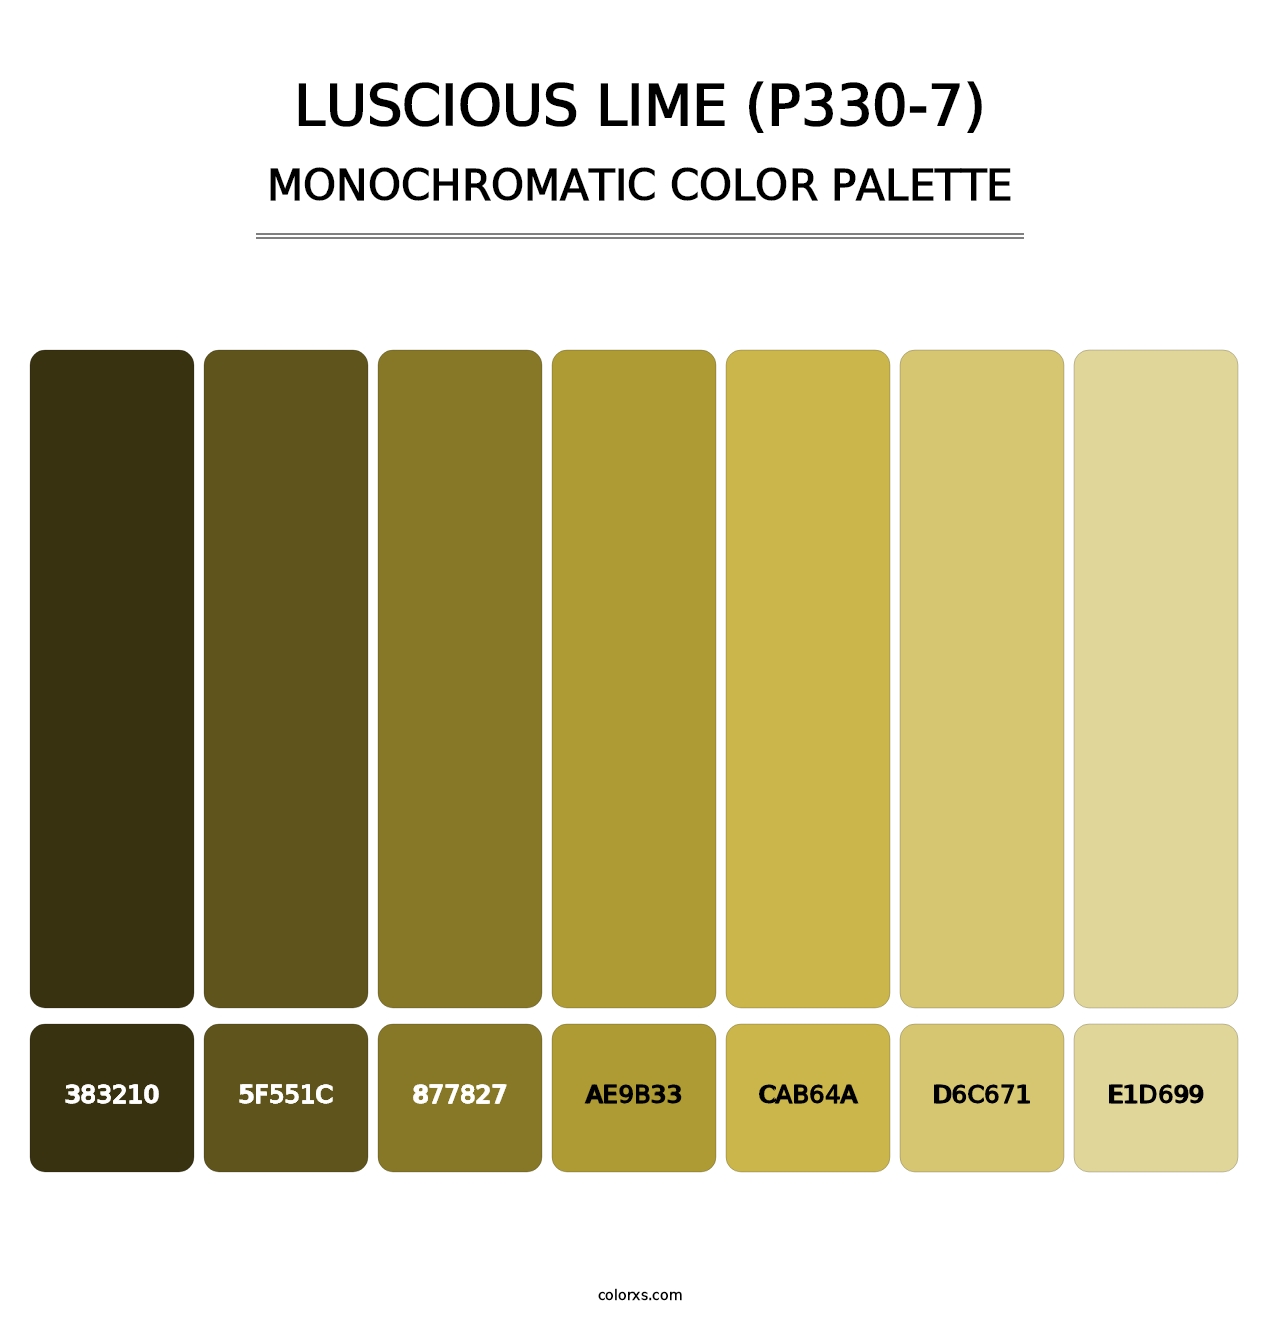 Luscious Lime (P330-7) - Monochromatic Color Palette